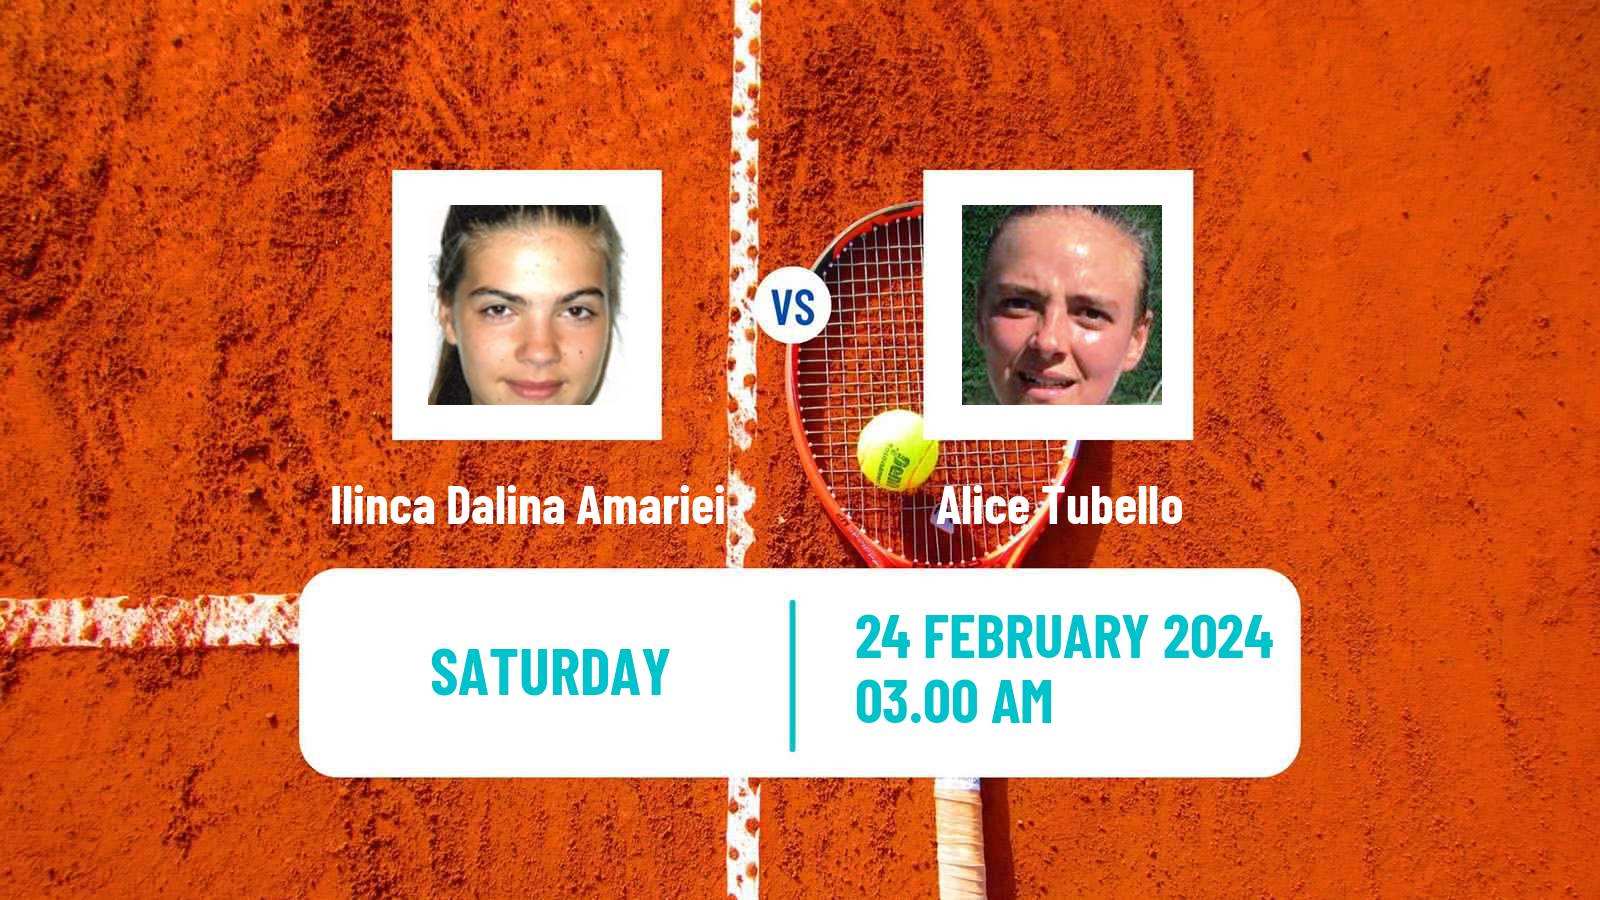 Tennis ITF W35 Hammamet 2 Women Ilinca Dalina Amariei - Alice Tubello